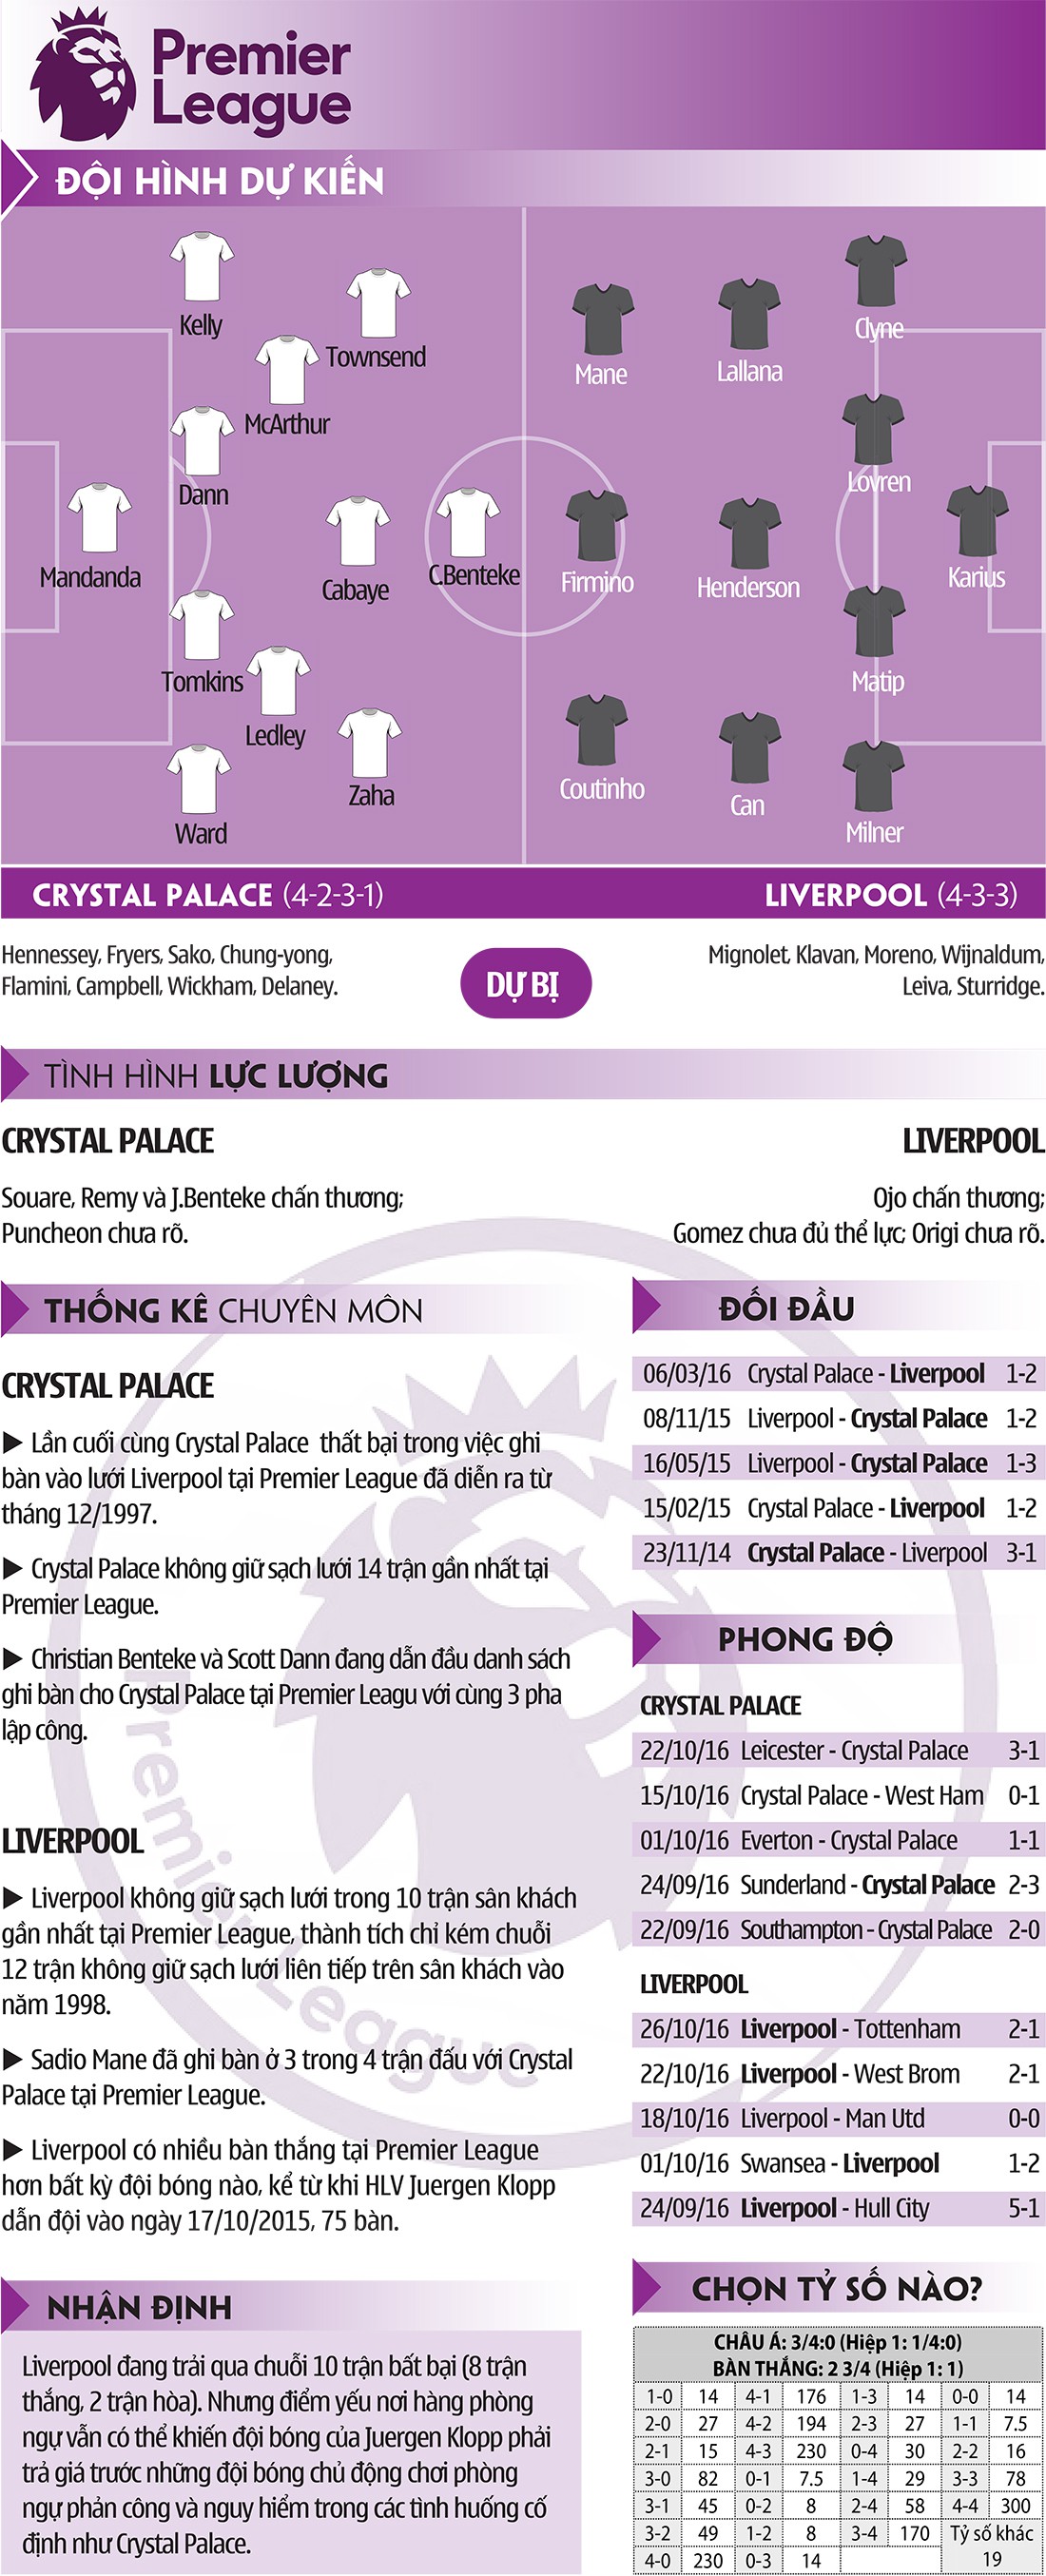 Crystal Palace-Liverpool: Klopp có hối hận vì bán Benteke?